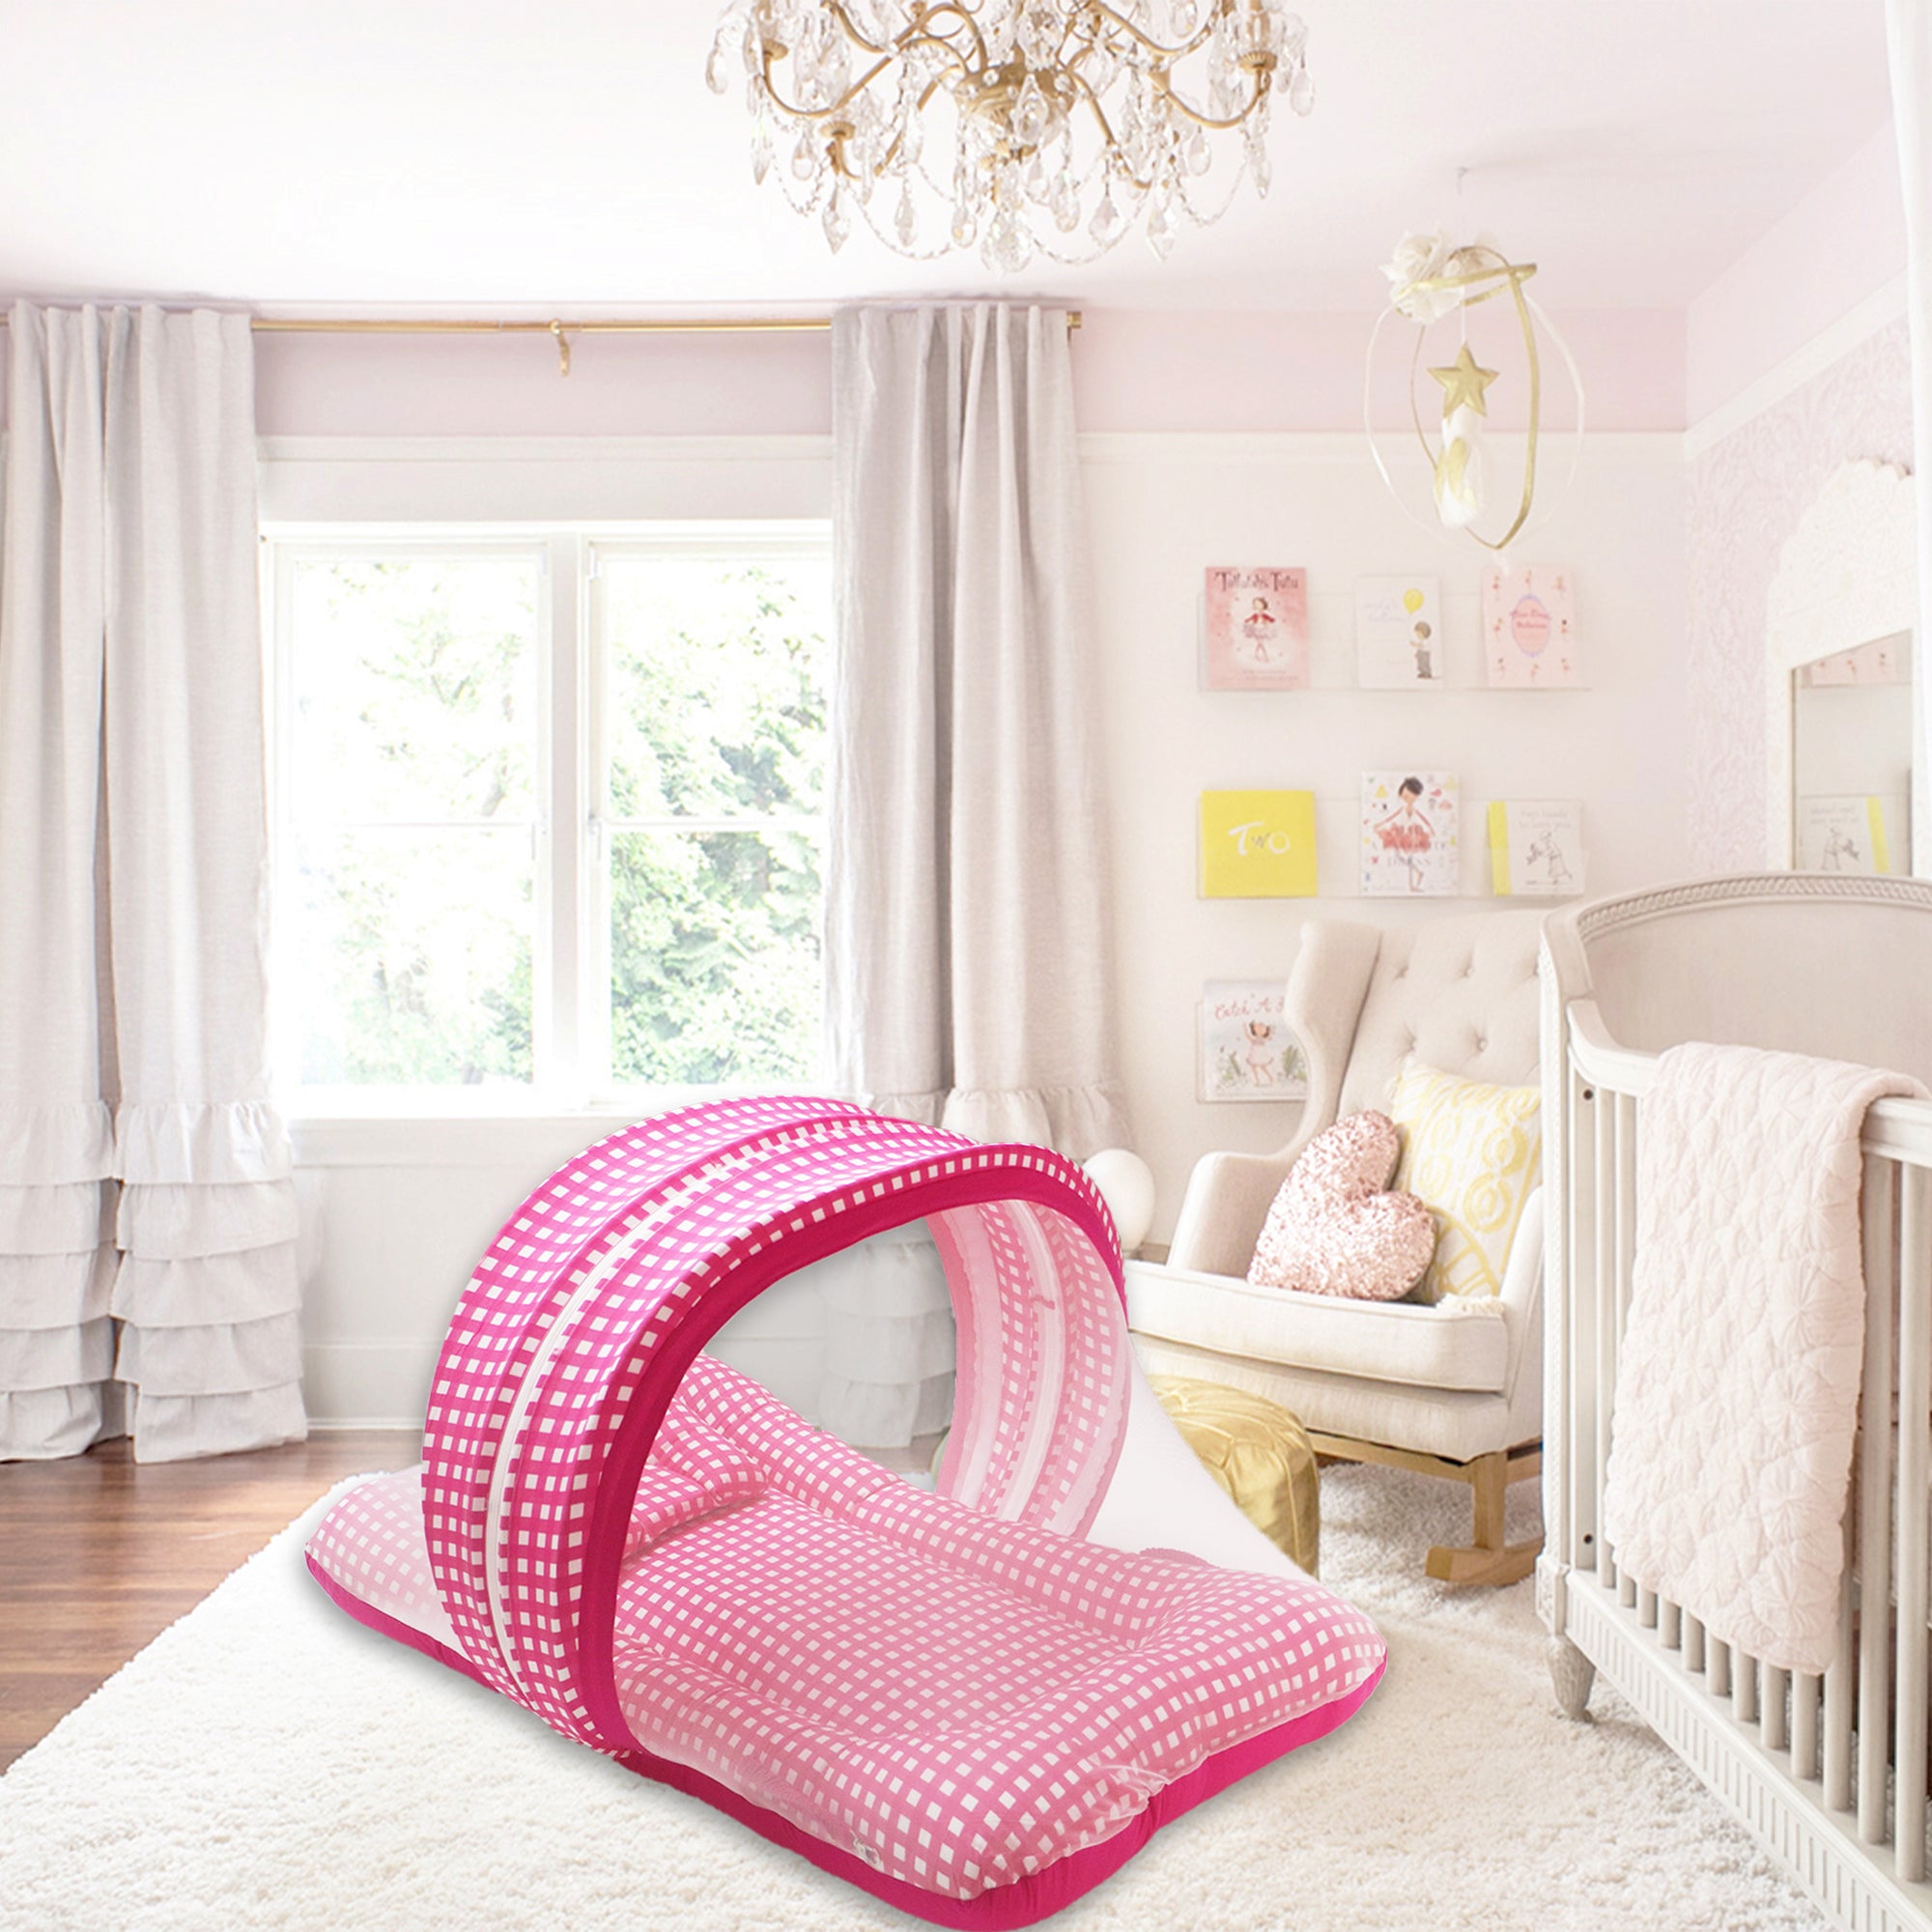 SoSmart -  Kradyl Kroft Bassinet Style Mosquito Net Bedding for Infants